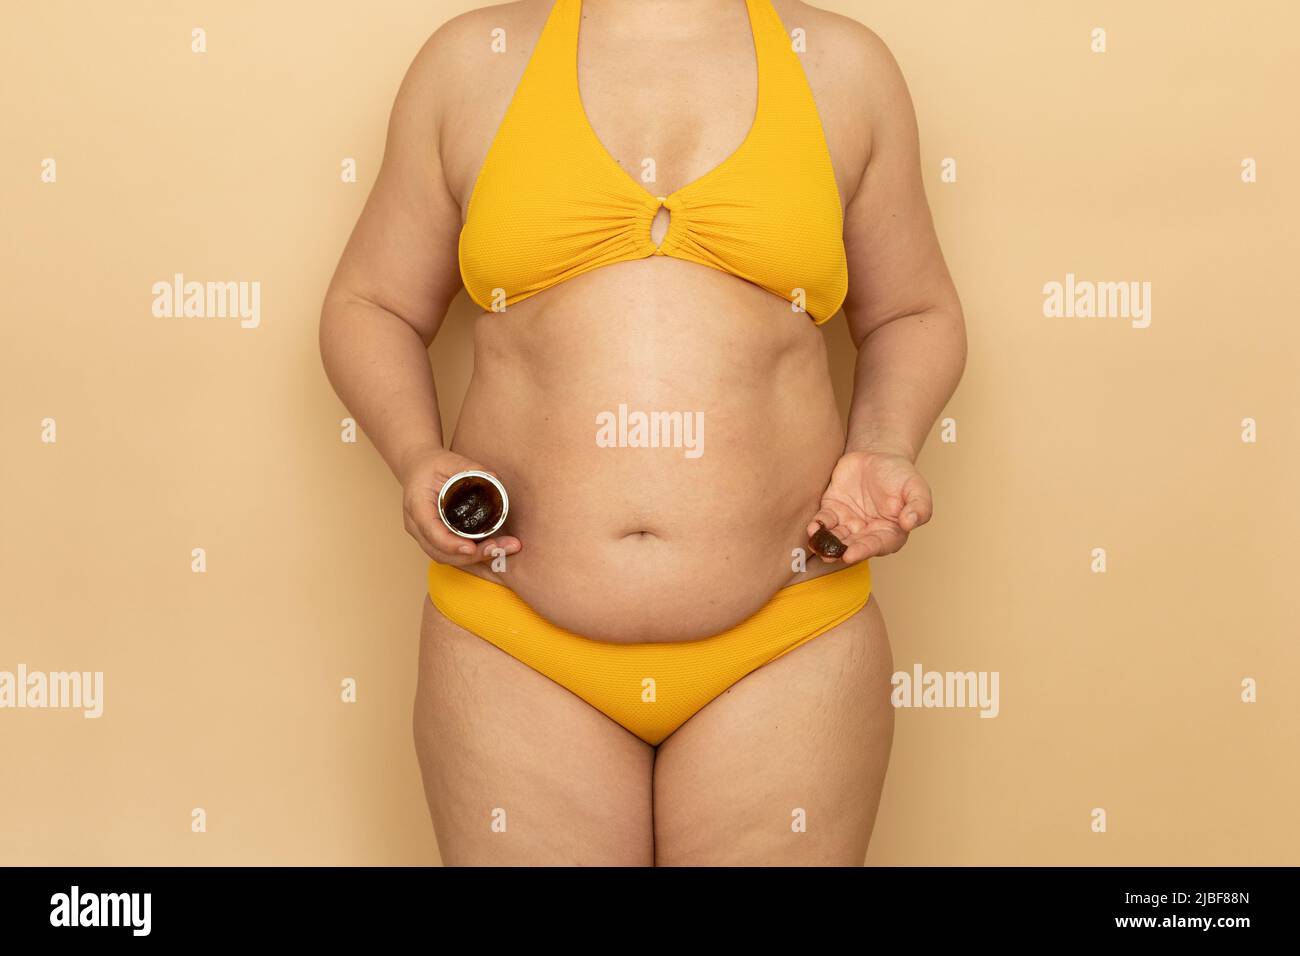 Frau in gelbem Badeanzug mit dicken schlaffe Bauch halten Glas Körpercreme  in der Hand, beige Hintergrund. Abnehmen, Bekämpfung von Übergewicht,  Fettleibigkeit und Stockfotografie - Alamy